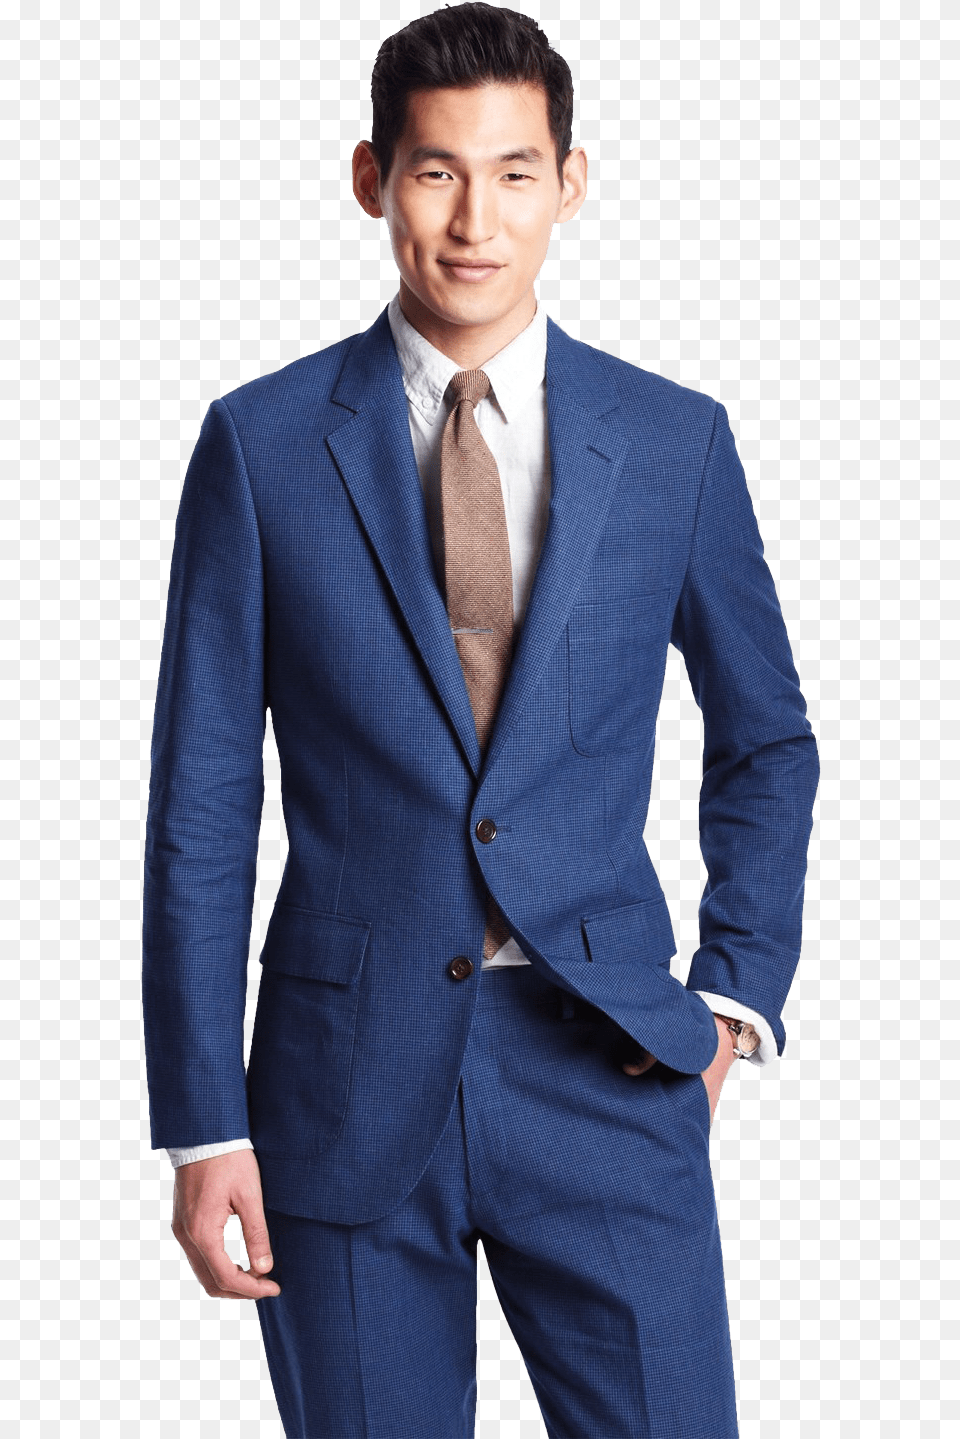 Groom Transparent Background Japanese Men In Suits, Blazer, Clothing, Coat, Formal Wear Png Image